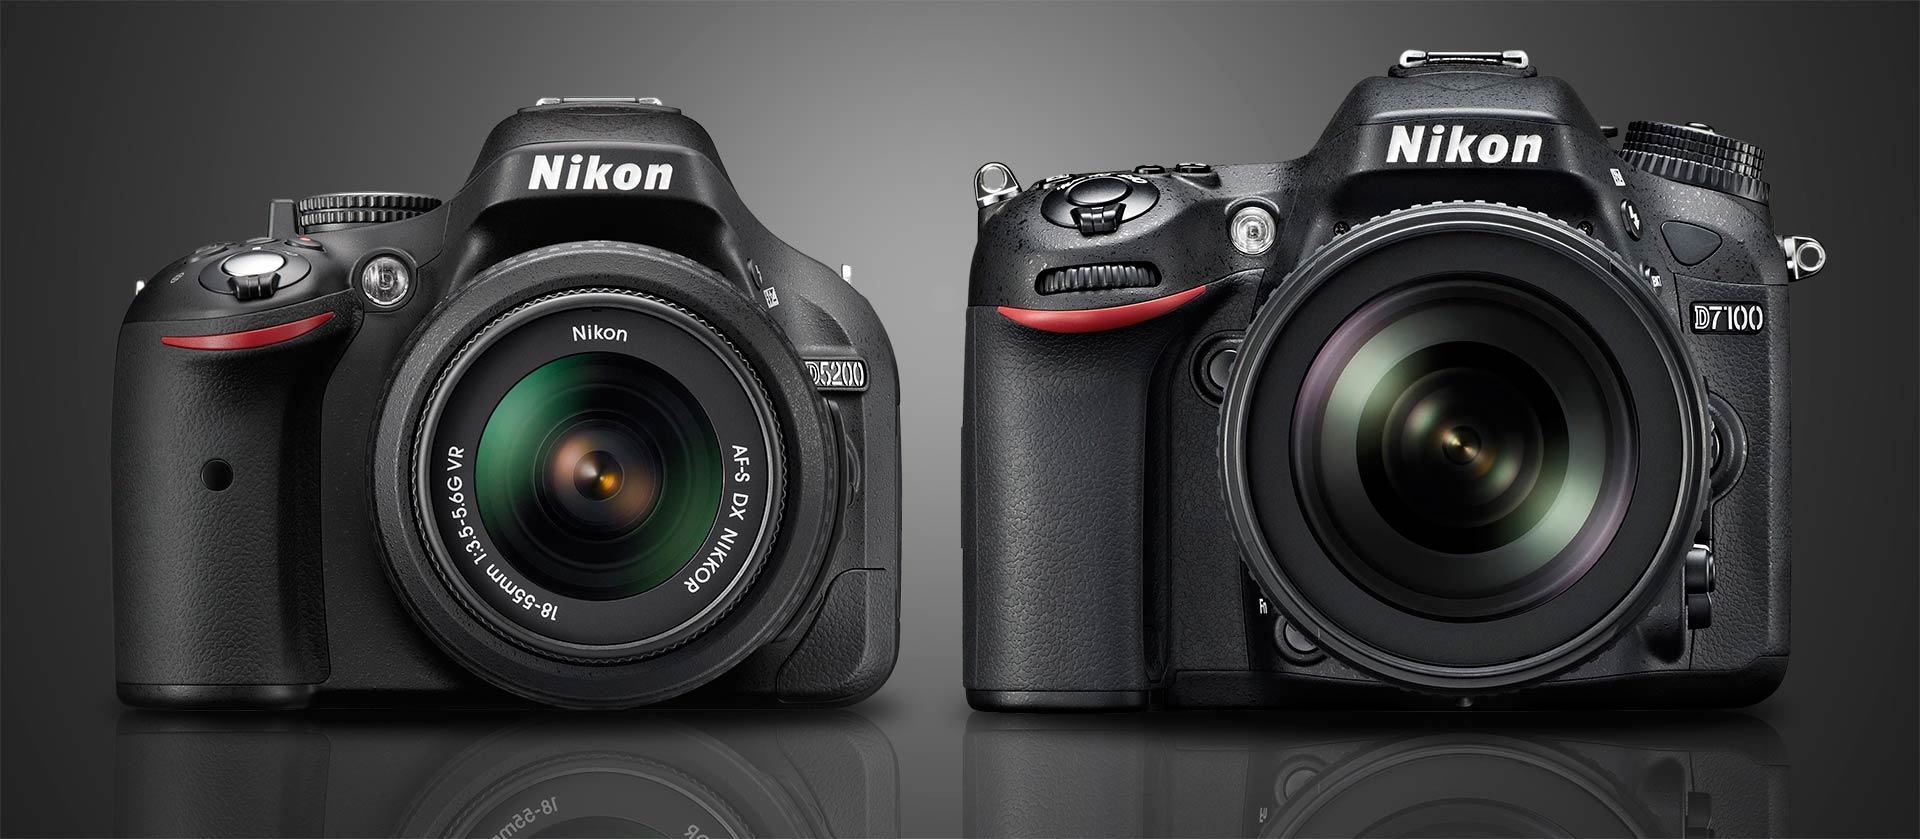 Nikon D5200 vs D7100